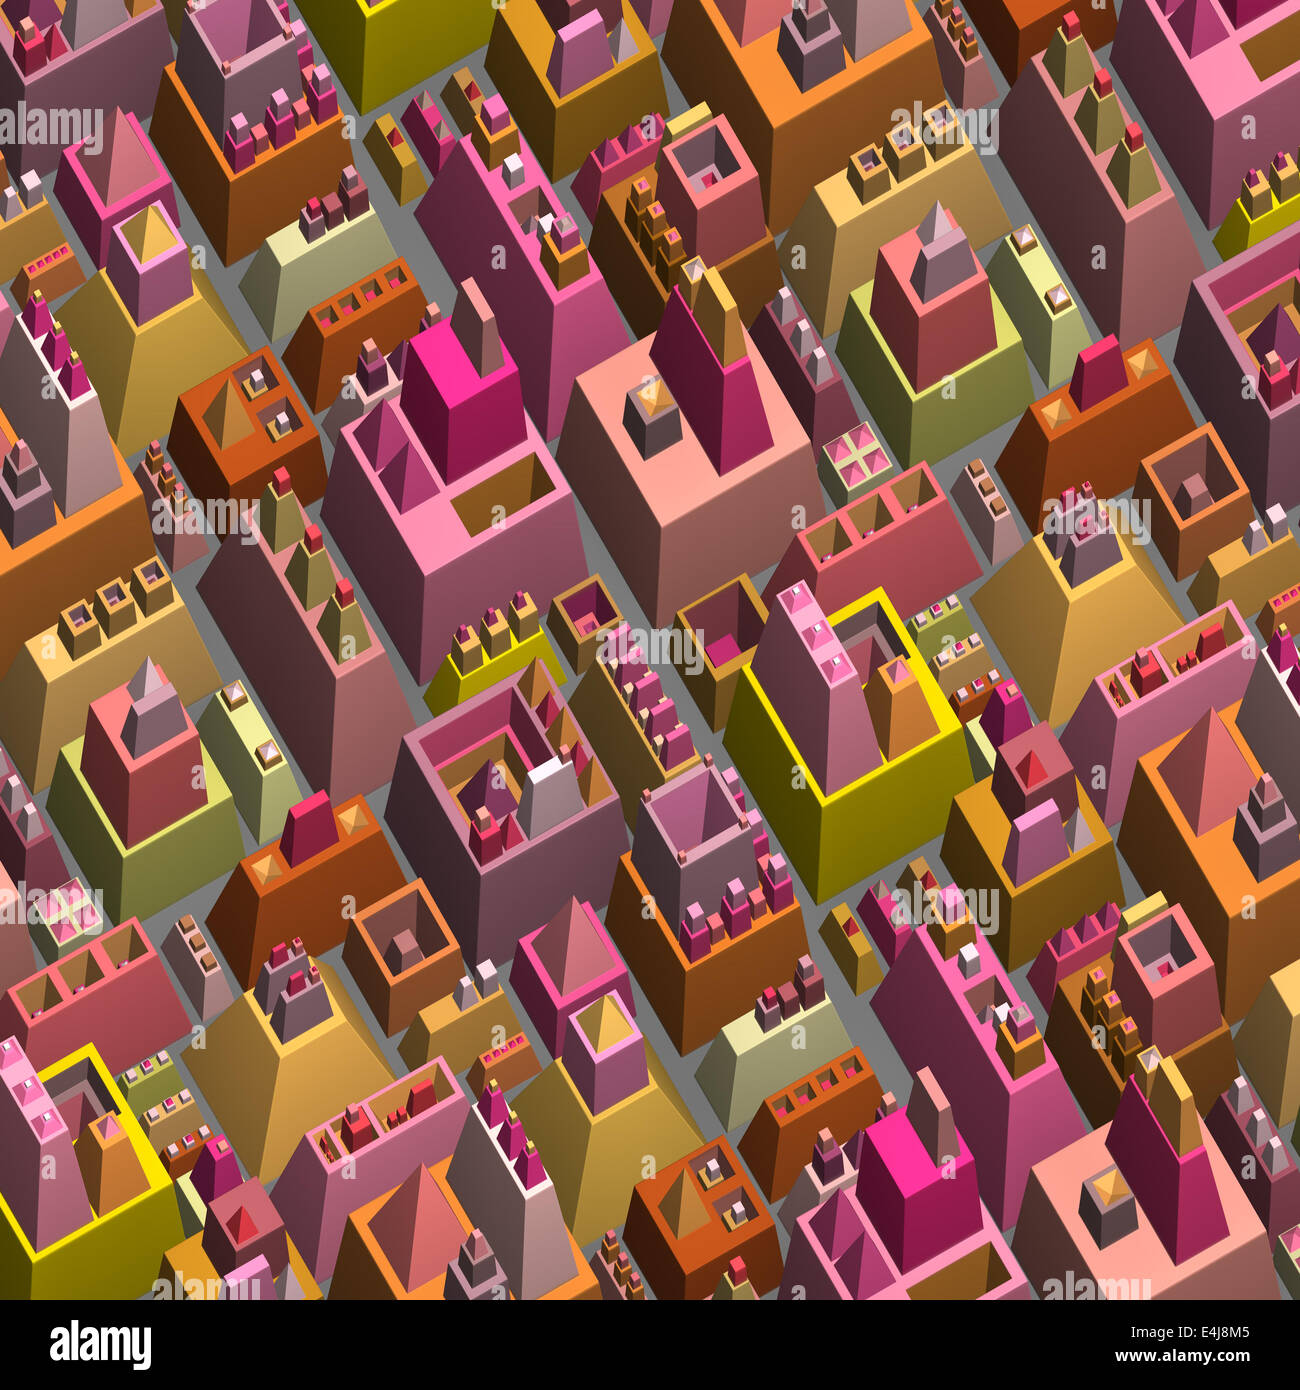 Ciudad futurista estilizado 3d en varios colores brillantes Foto de stock